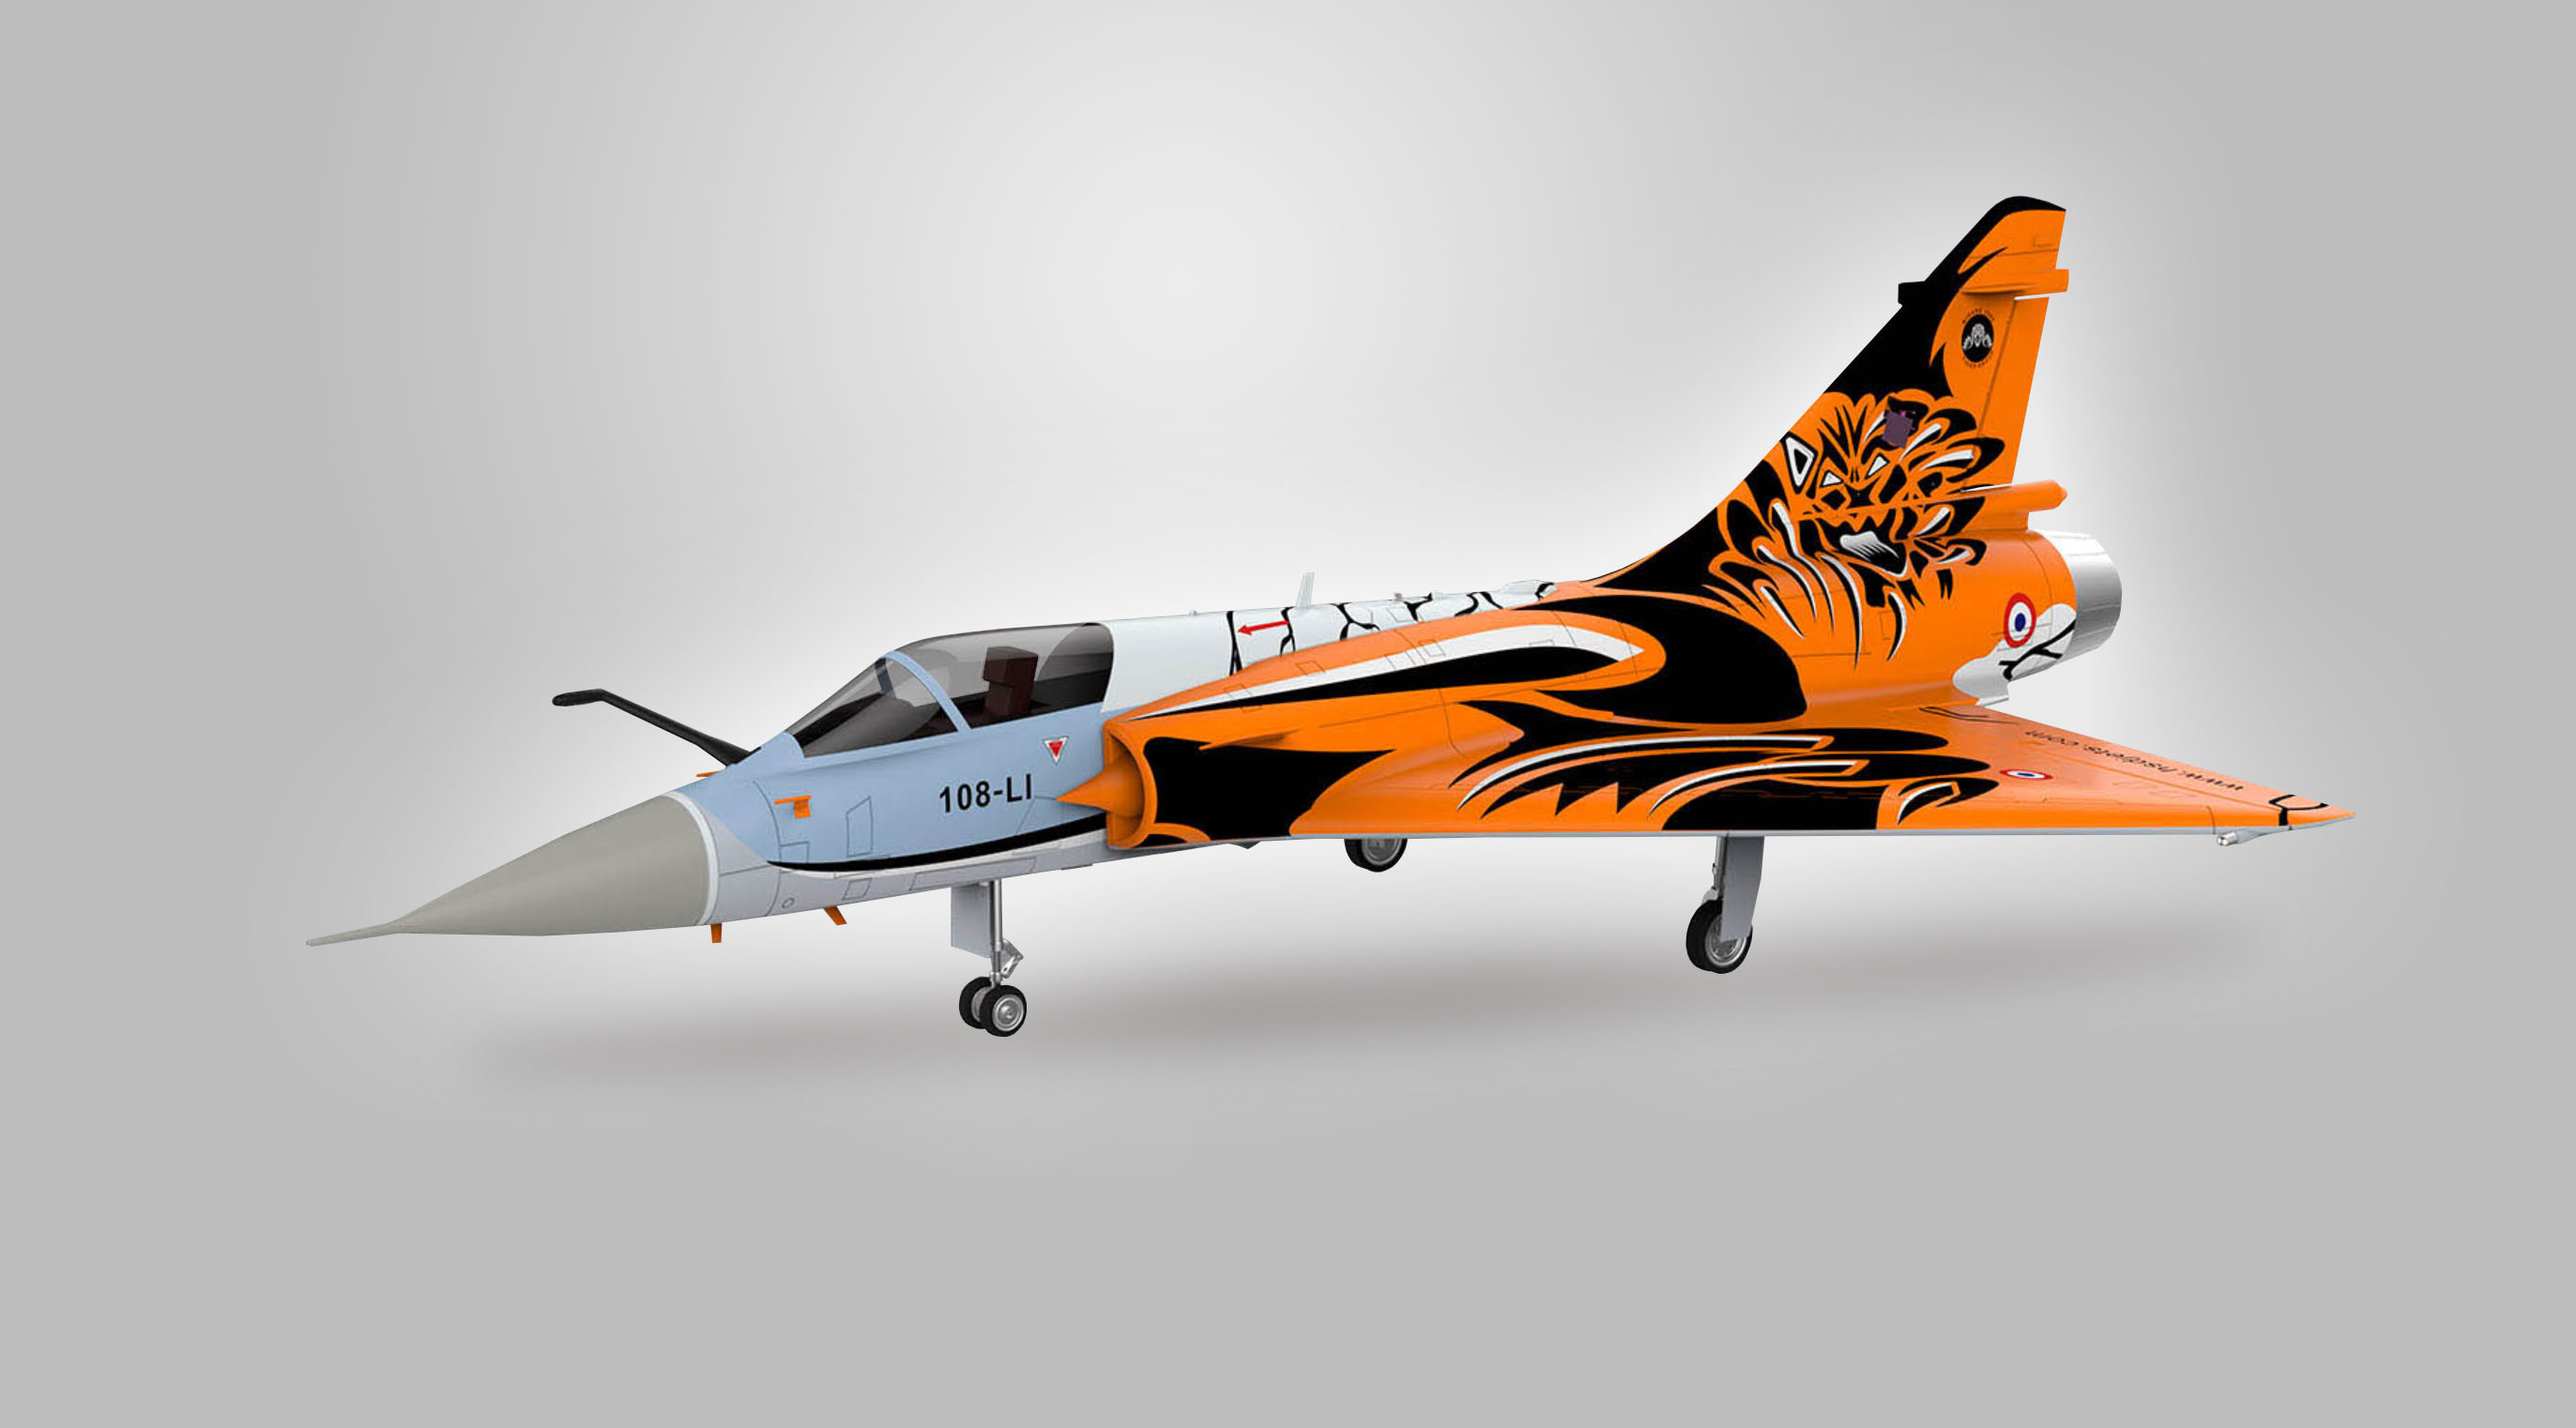 Mirage 2000 HSDjets